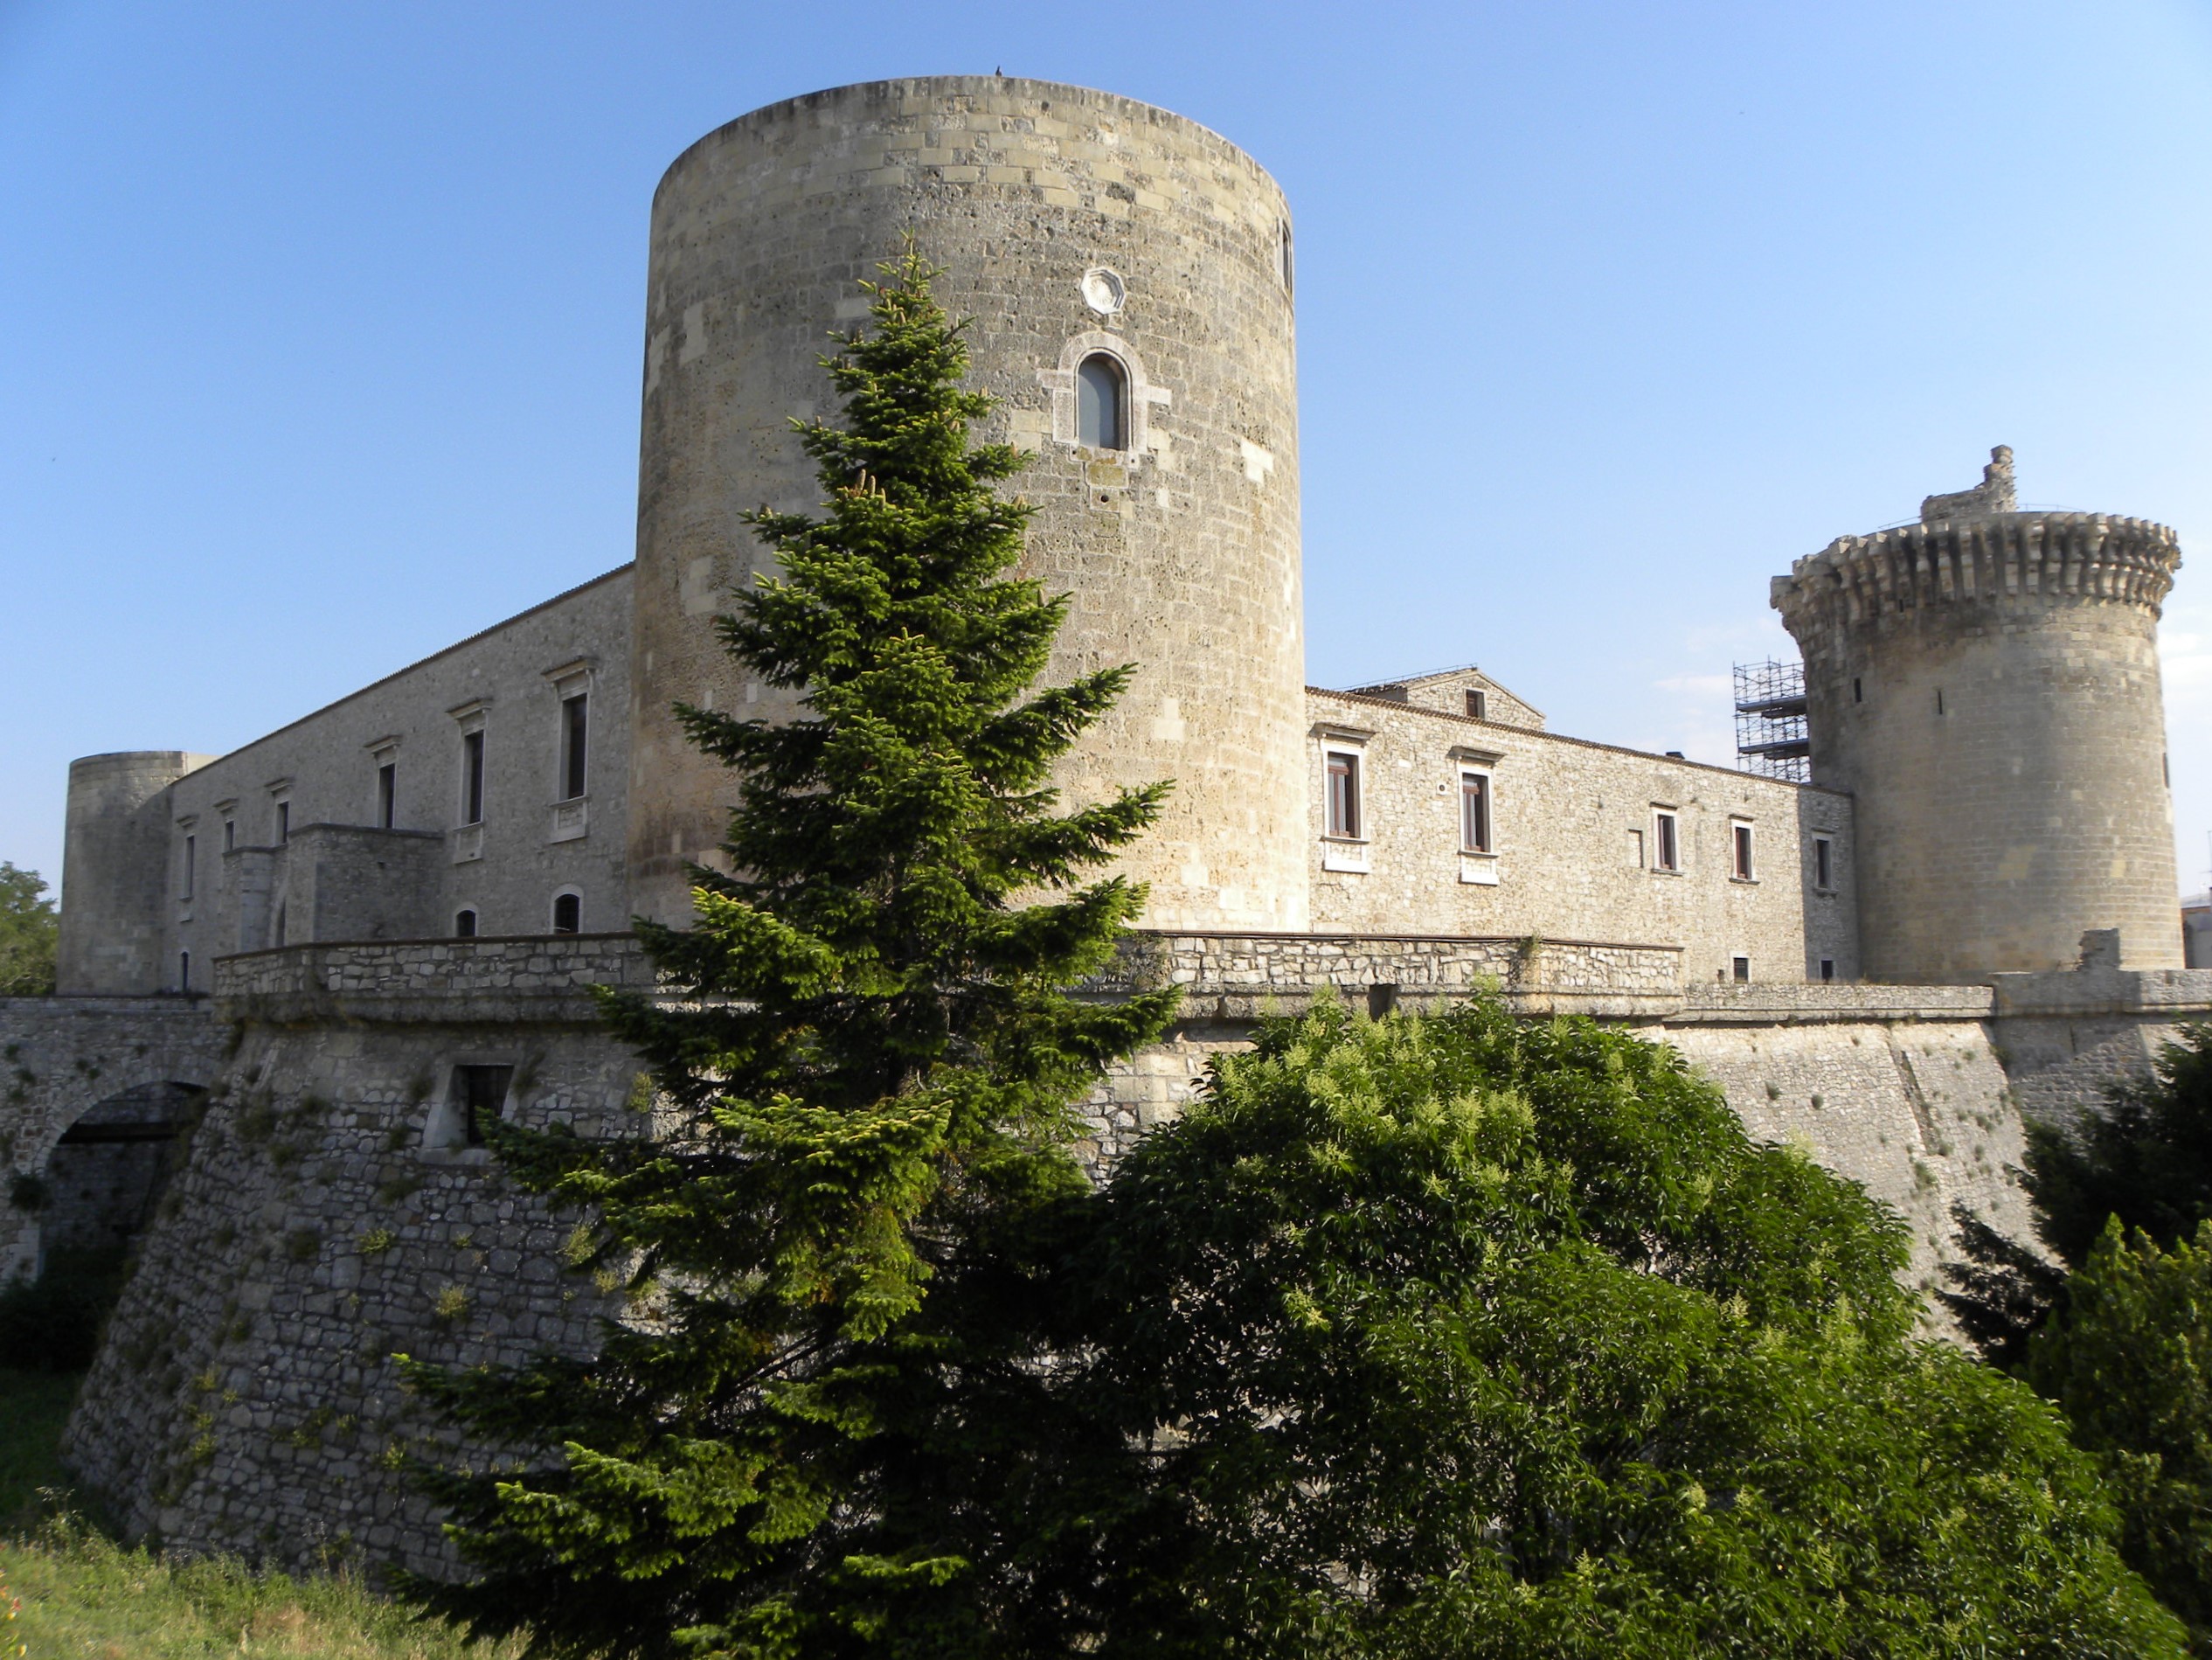 Unpodizucchero, Venosa, Medieval Castle, now Archeological Museum (Museo archeologico nazionale di Venosa), 2010, fotografia digitale